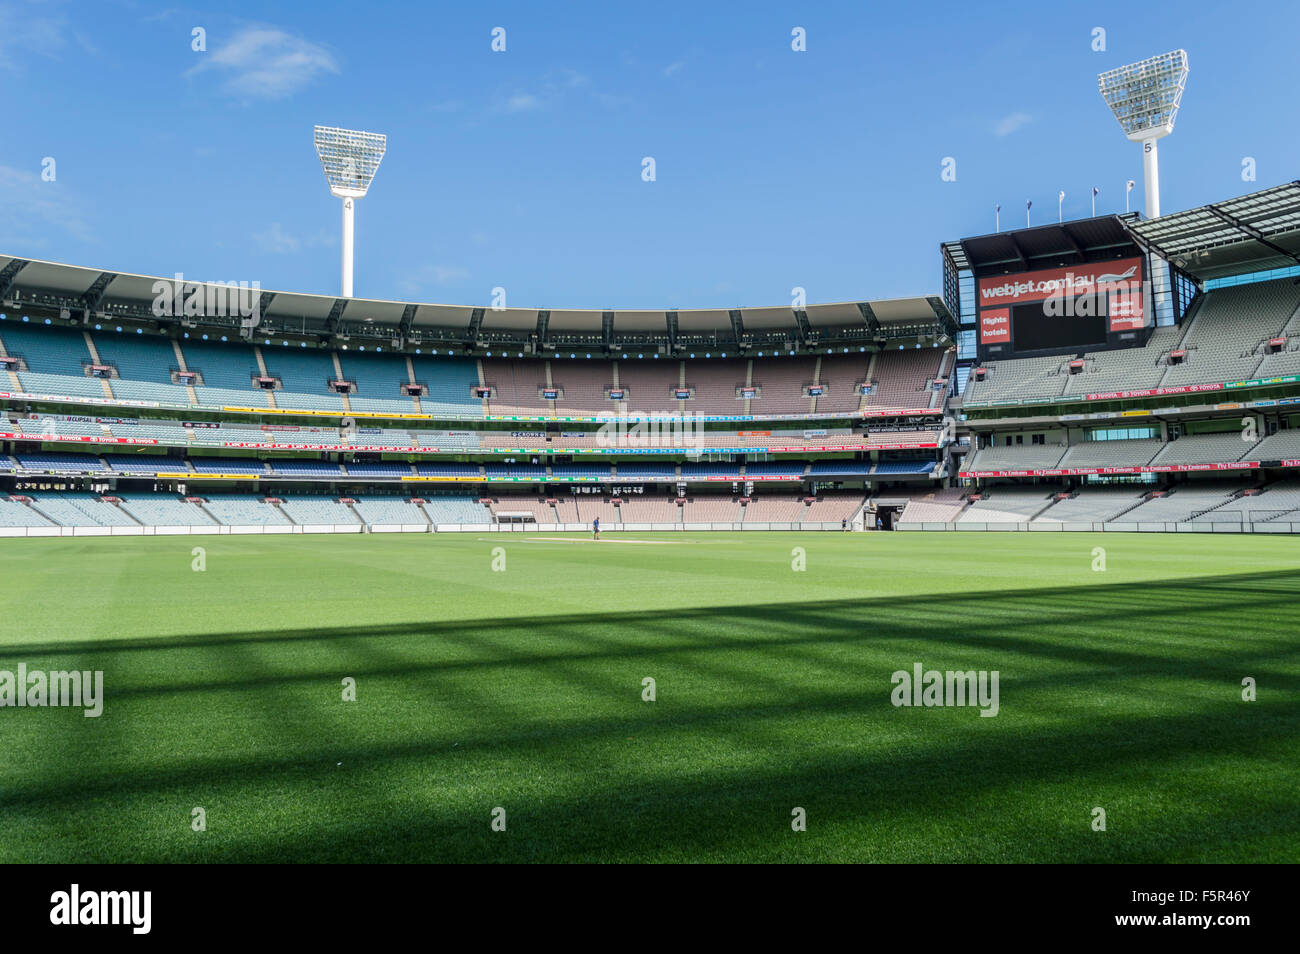 Le Melbourne Cricket Ground (MCG) est un stade sportif australien situé à Yarra Park, Melbourne, Victoria, et est le foyer de th Banque D'Images